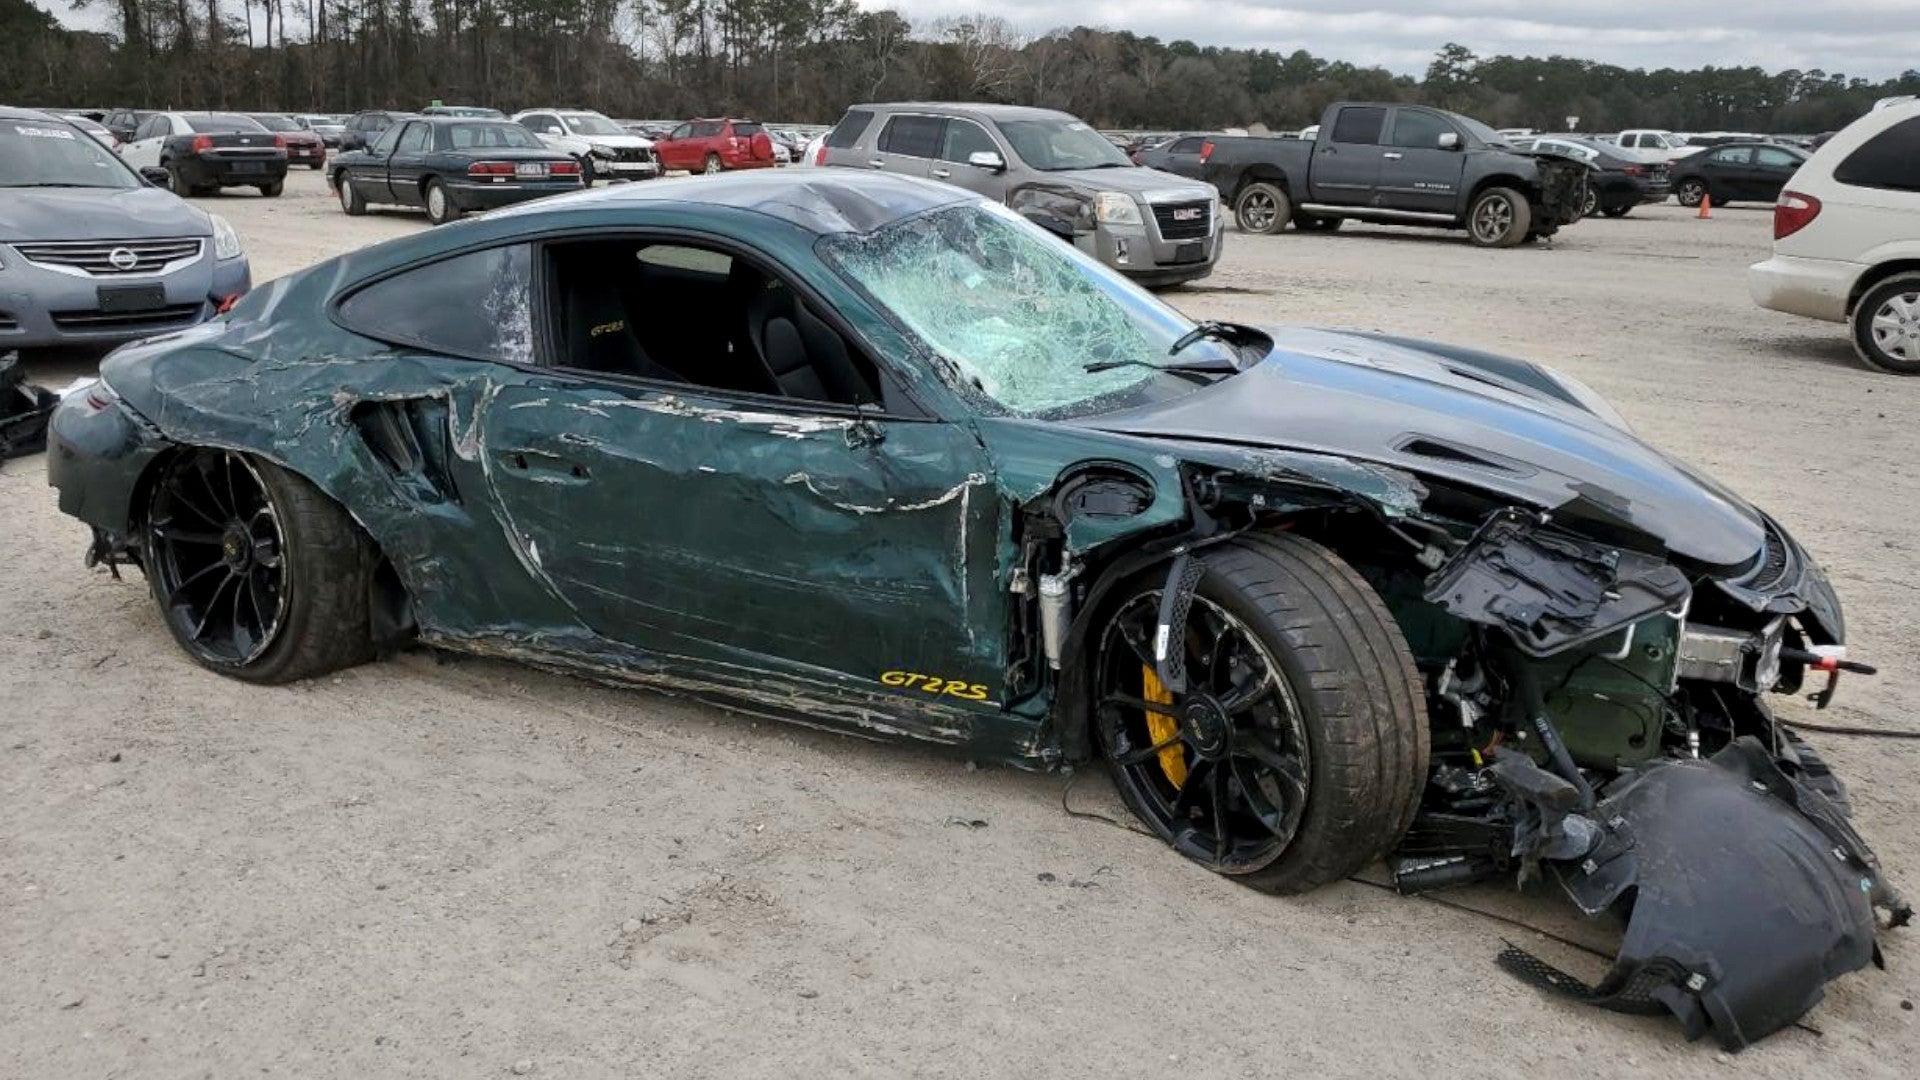 Počkat, to je rozbité Porsche 911 GT2 RS profesionálního golfisty Patricka Reeda na Copartu?